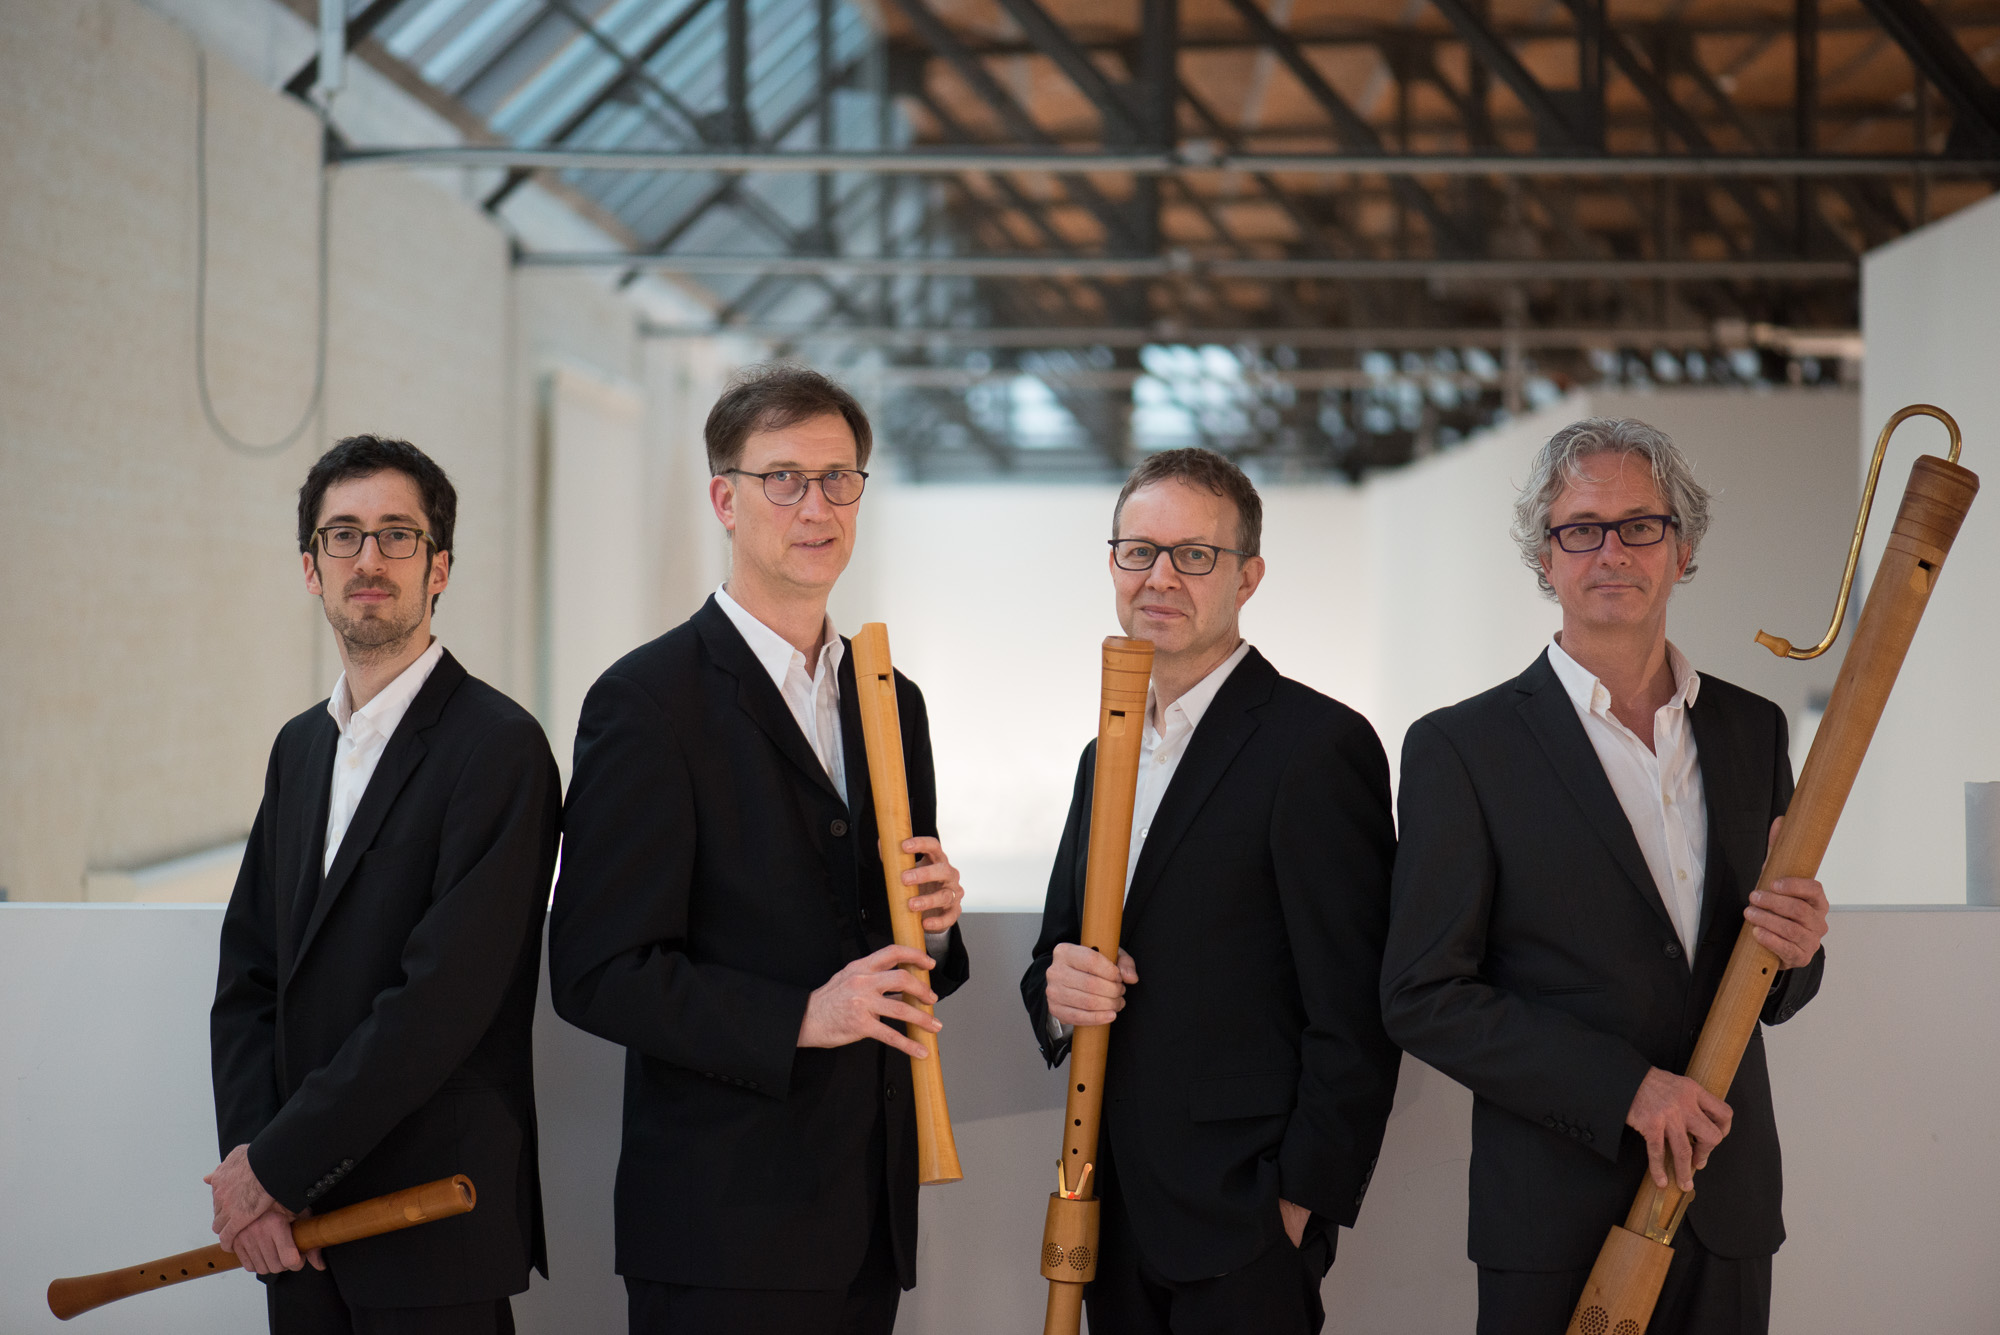 Flanders recorder Quartet